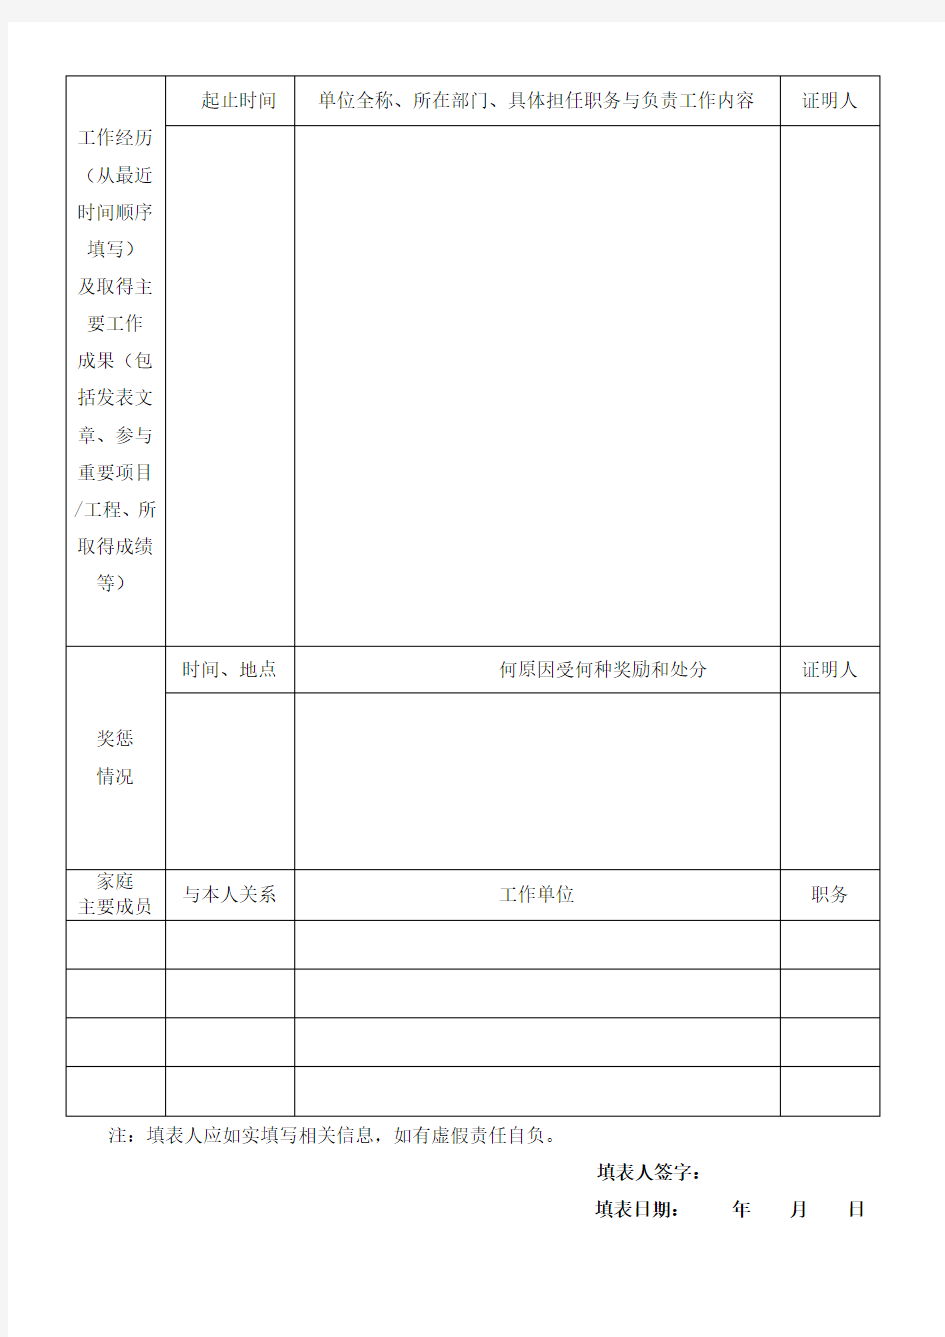 咸阳市北塬新城开发建设管理委员会应聘人员报名表